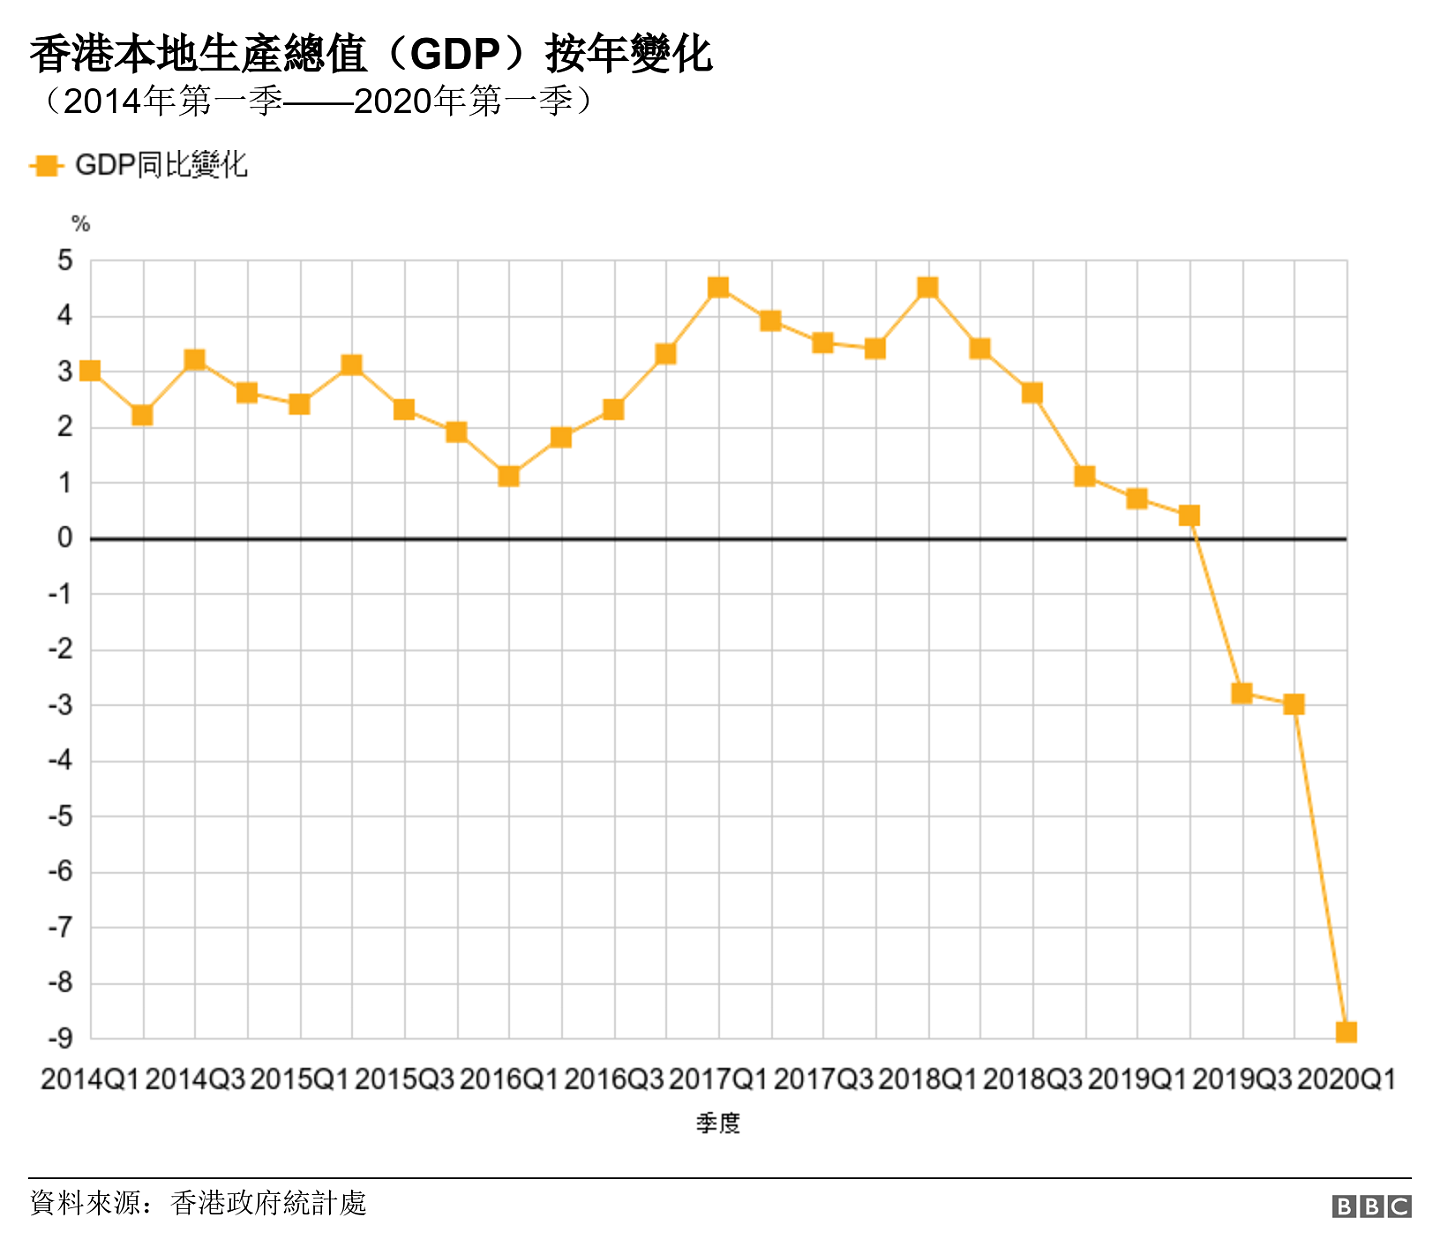 香港本地生產總值（GDP）按年變化. （2014年第一季——2020年第一季）. 從2014年第一季度至2020年第一季度香港GDP數字與去年同期比較增幅之趨勢圖 .